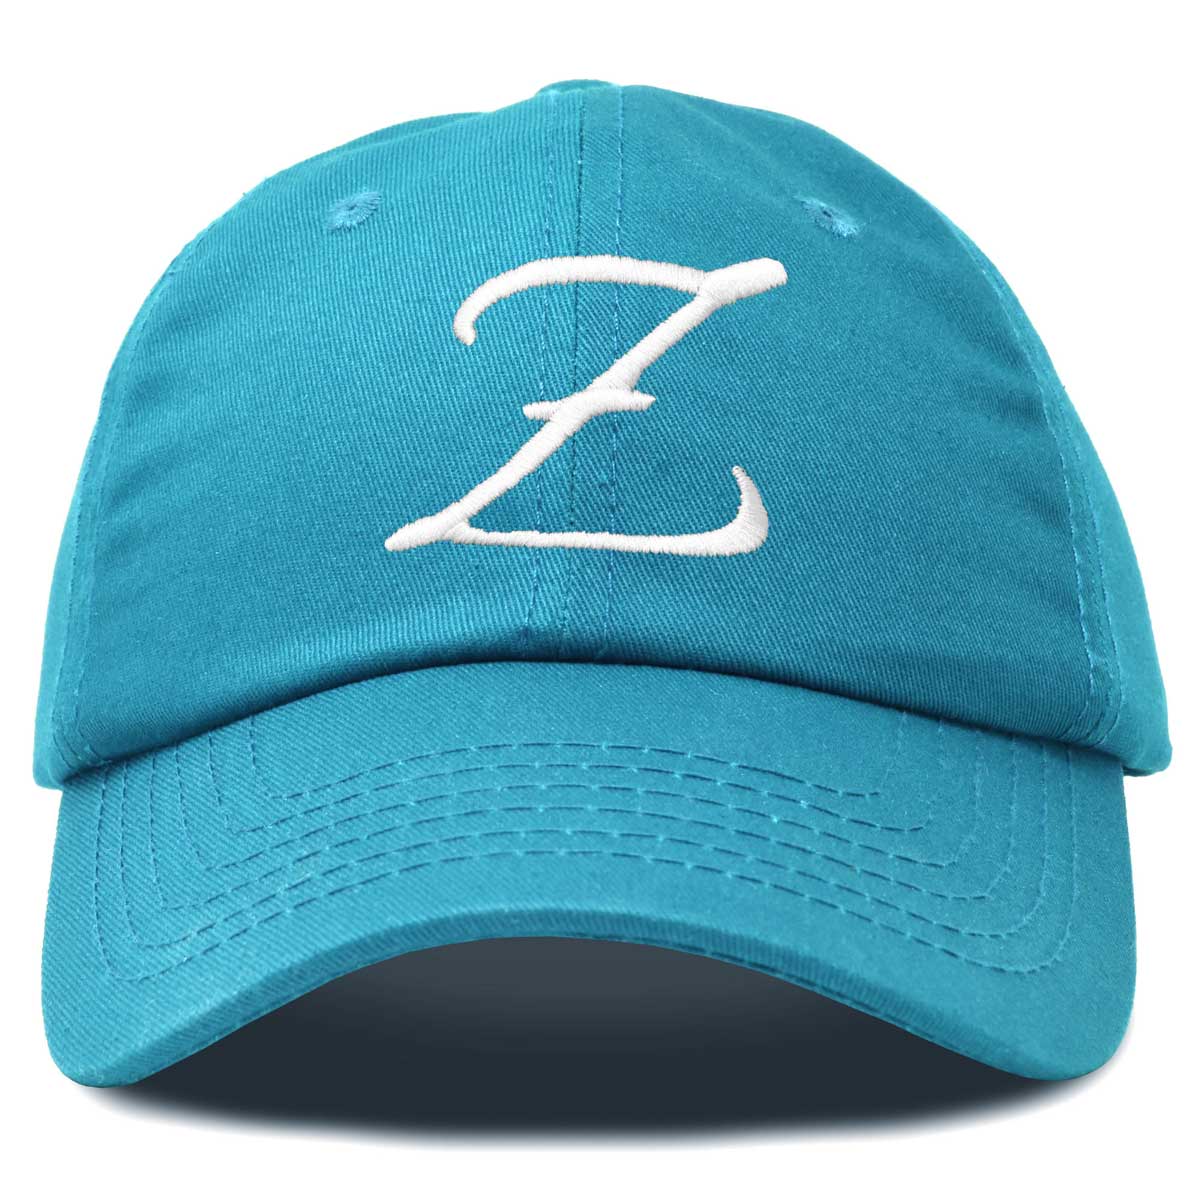 Dalix Initial Letter Z Hat